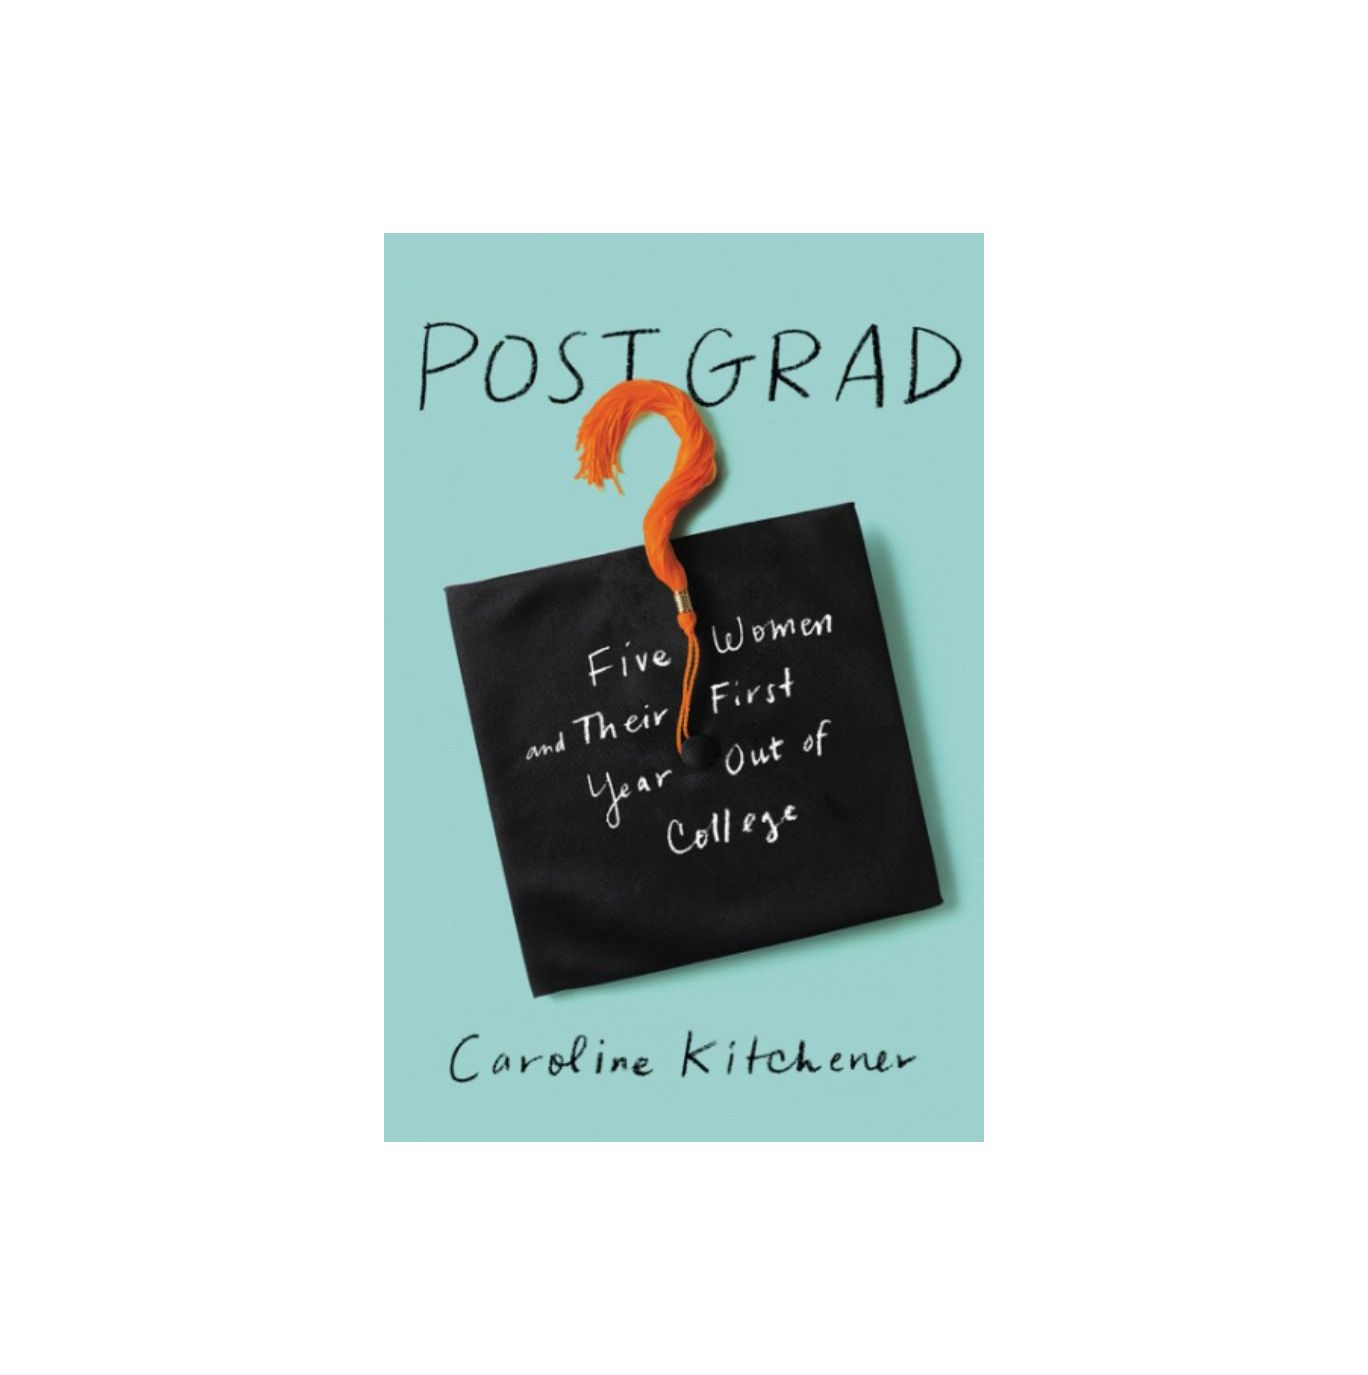 Post Grad: Viisi naista ja heidän ensimmäinen vuosi yliopistosta, kirjoittanut Caroline Kitchener